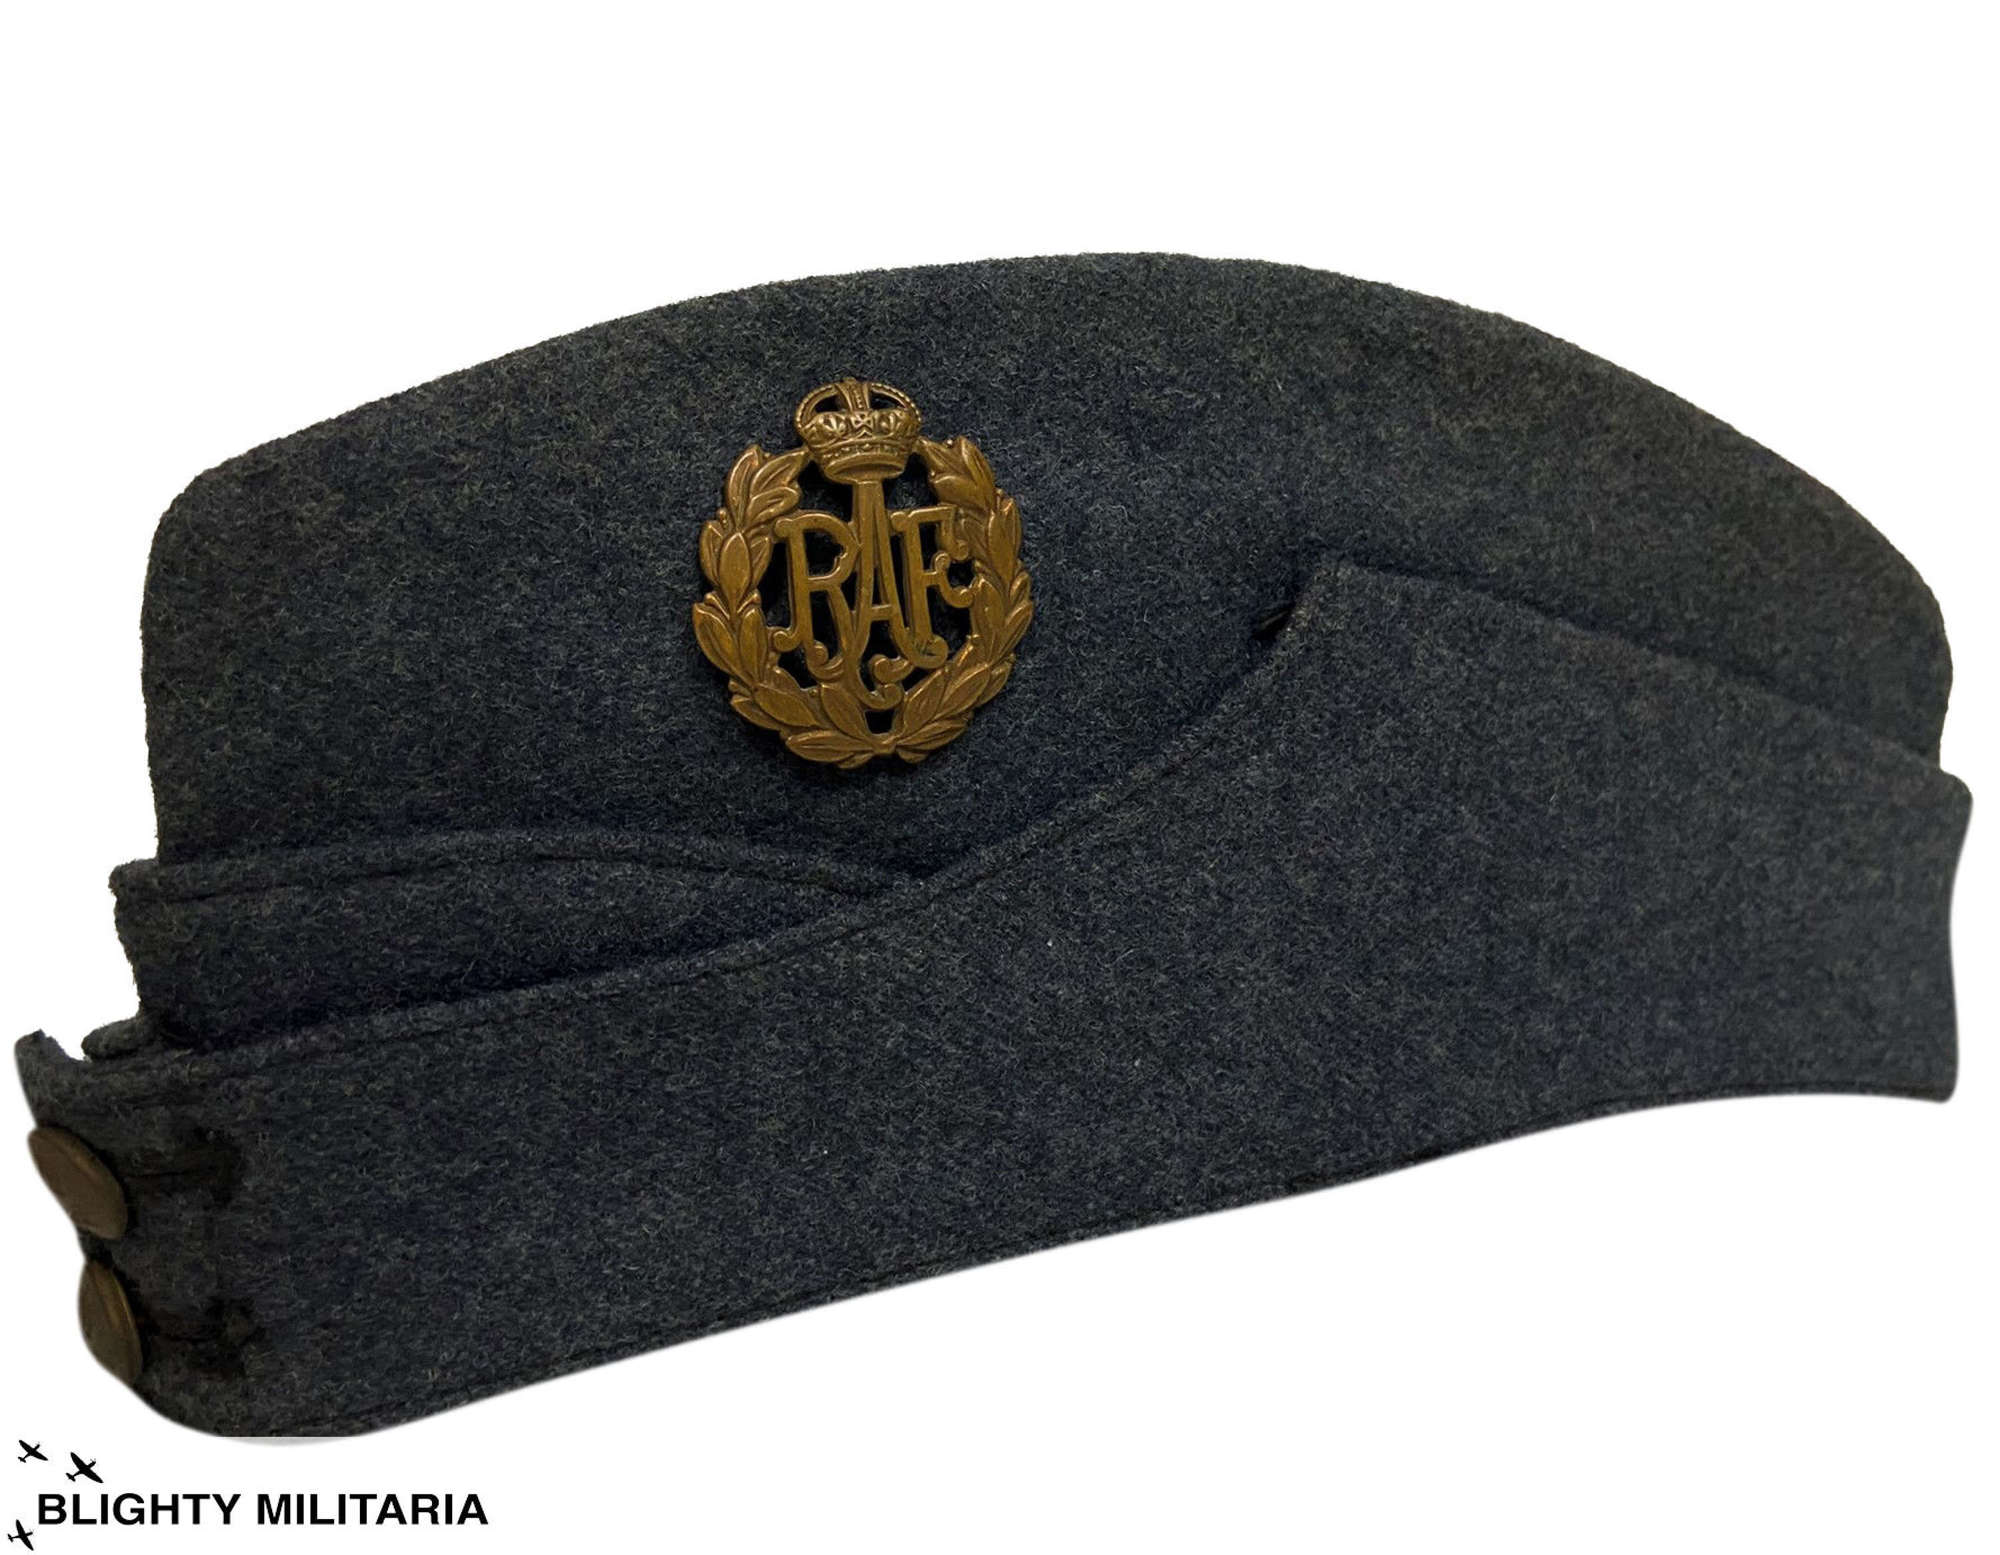 Original 1942 Dated RAF Ordinary Airman's Field Service Cap Size 6 1/4